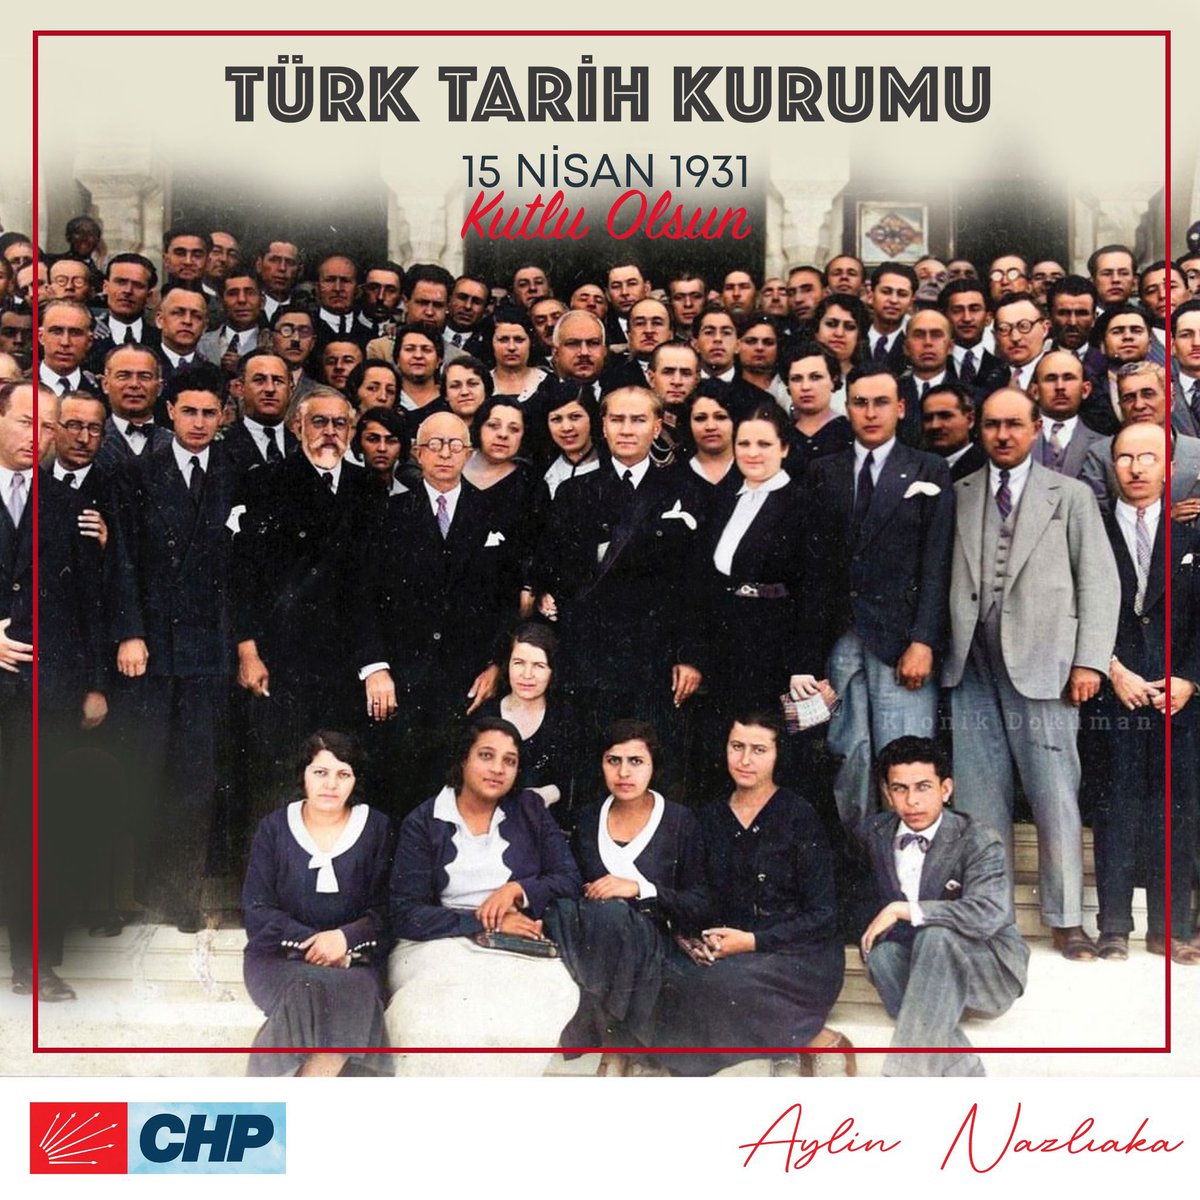 Türk Tarih Kurumu'nun 93'üncü kuruluş yıl dönümünü kutlu olsun! Gazi Mustafa Kemal Atatürk’e saygıyla…🇹🇷